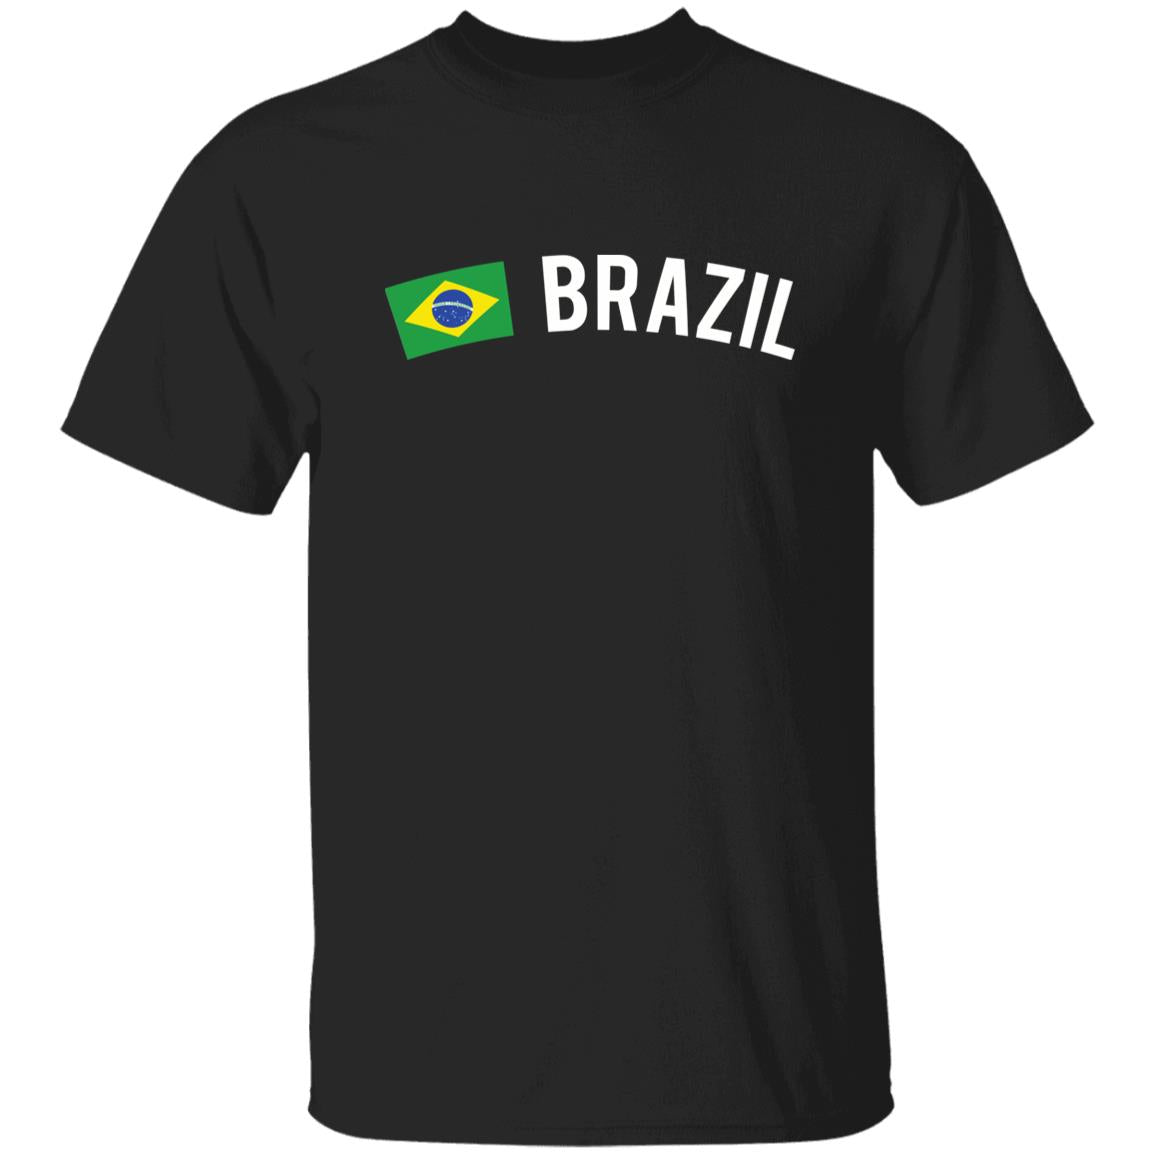 Brazil Unisex T-shirt gift Brazilian flag tee Brasilia White Black Dark Heather-Family-Gift-Planet